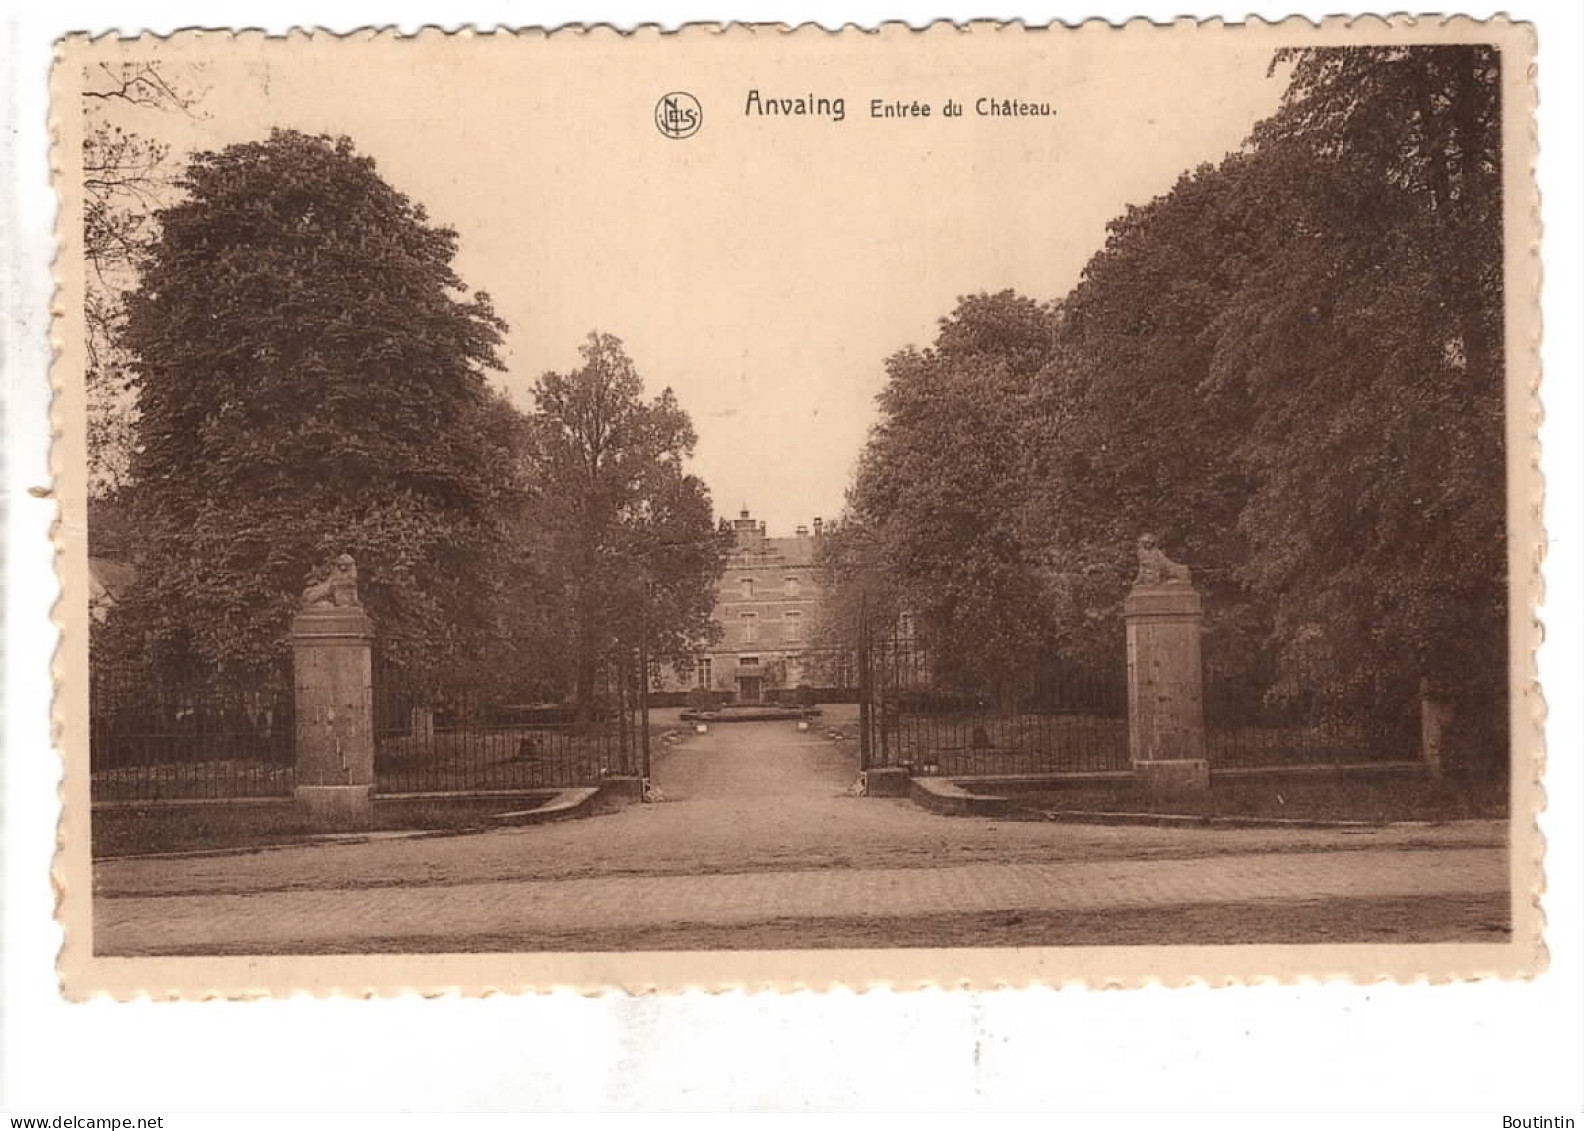 Anvaing Entrée Du Château - Frasnes-lez-Anvaing